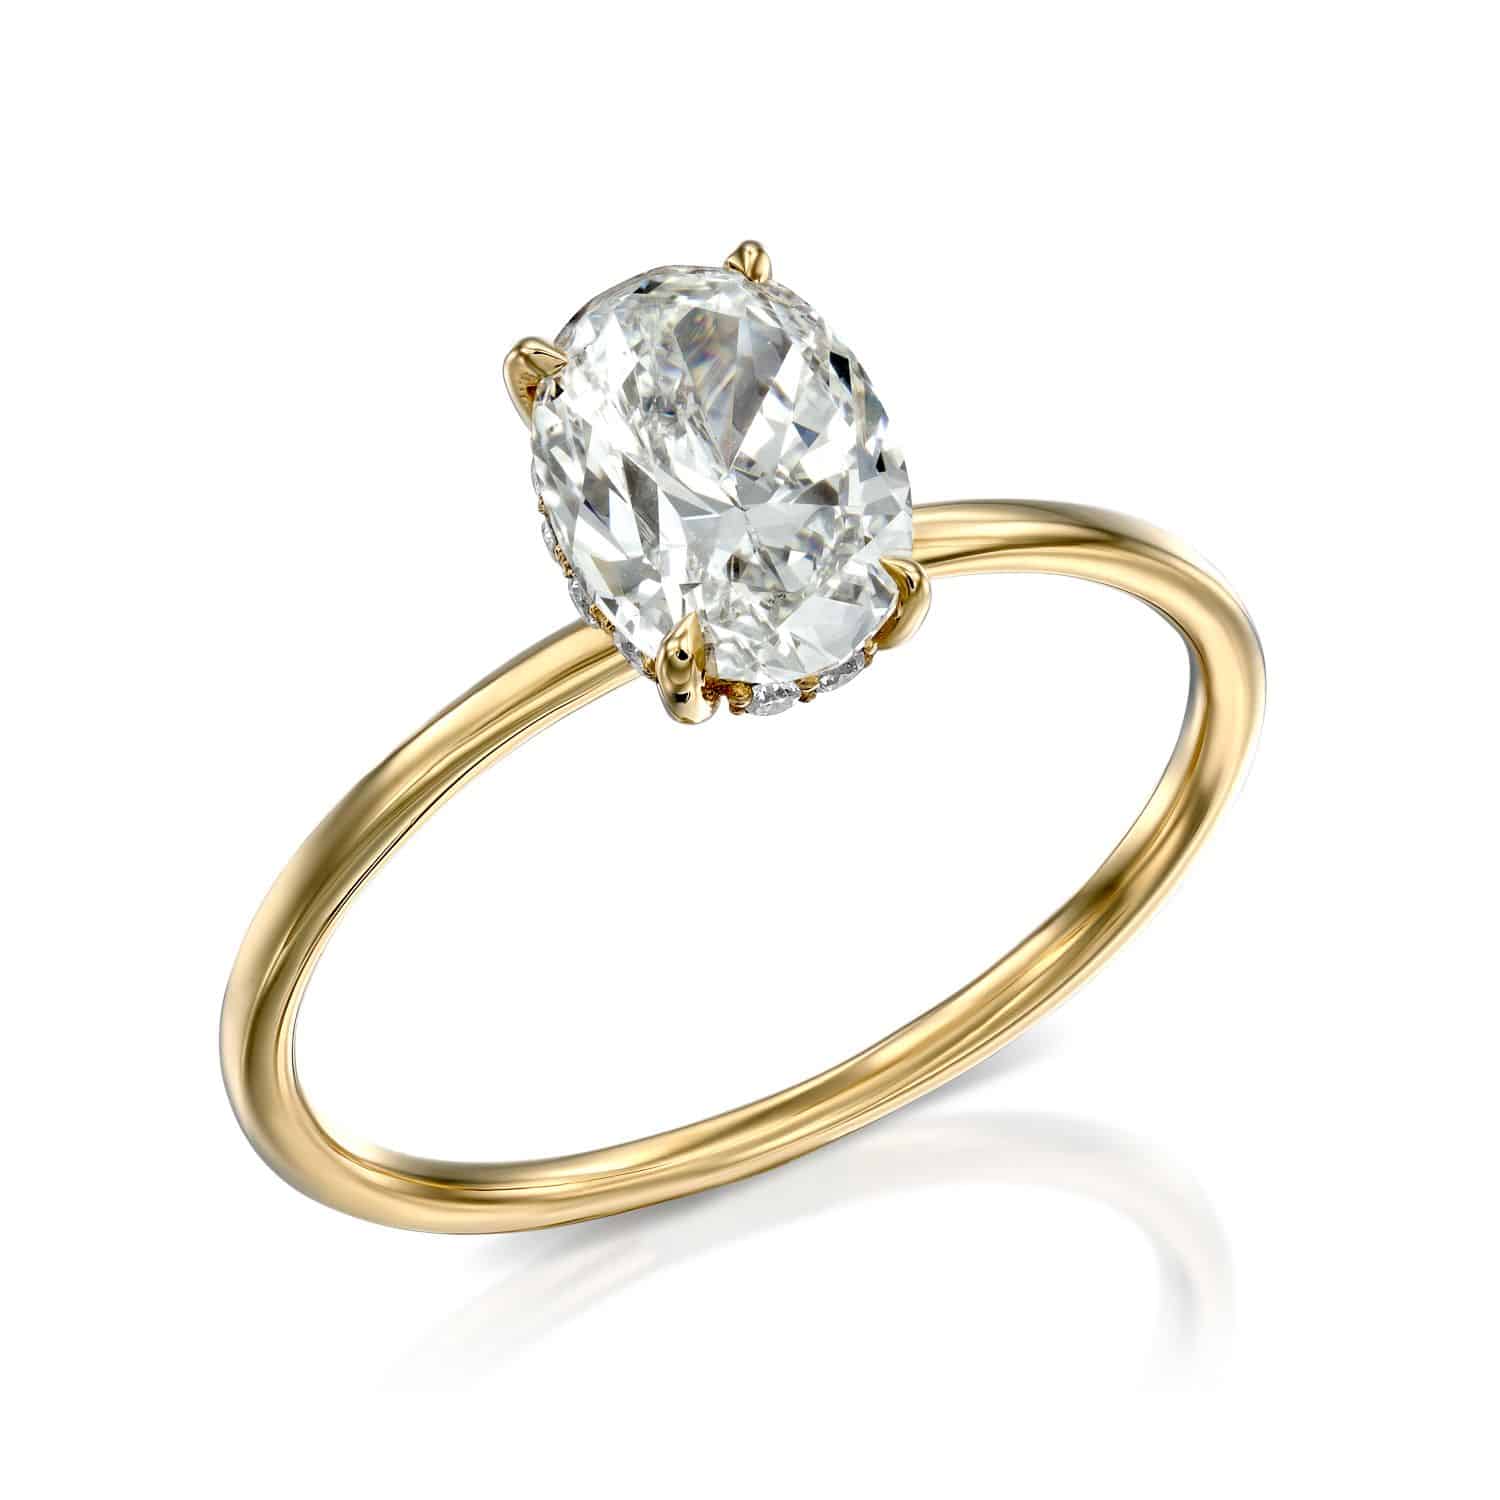 טבעת אירוסין זהב אלגנטי זהב סוליטר דגם Leonie R865 הכולל יהלום גדול בחיתוך אובלי משובץ על רקע לבן.